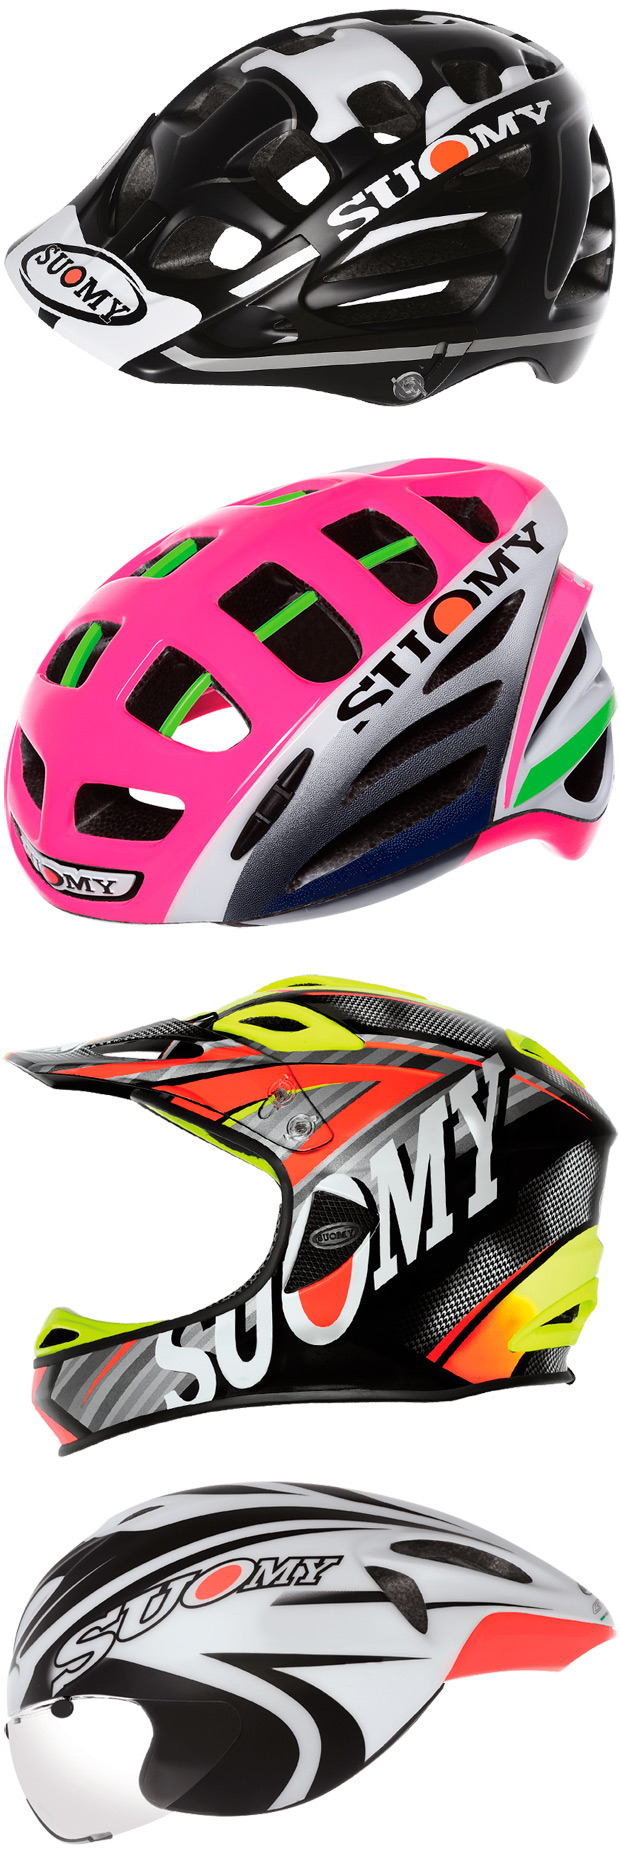 Los cascos para ciclistas de Suomy, distribuidos en España por Merida Bikes